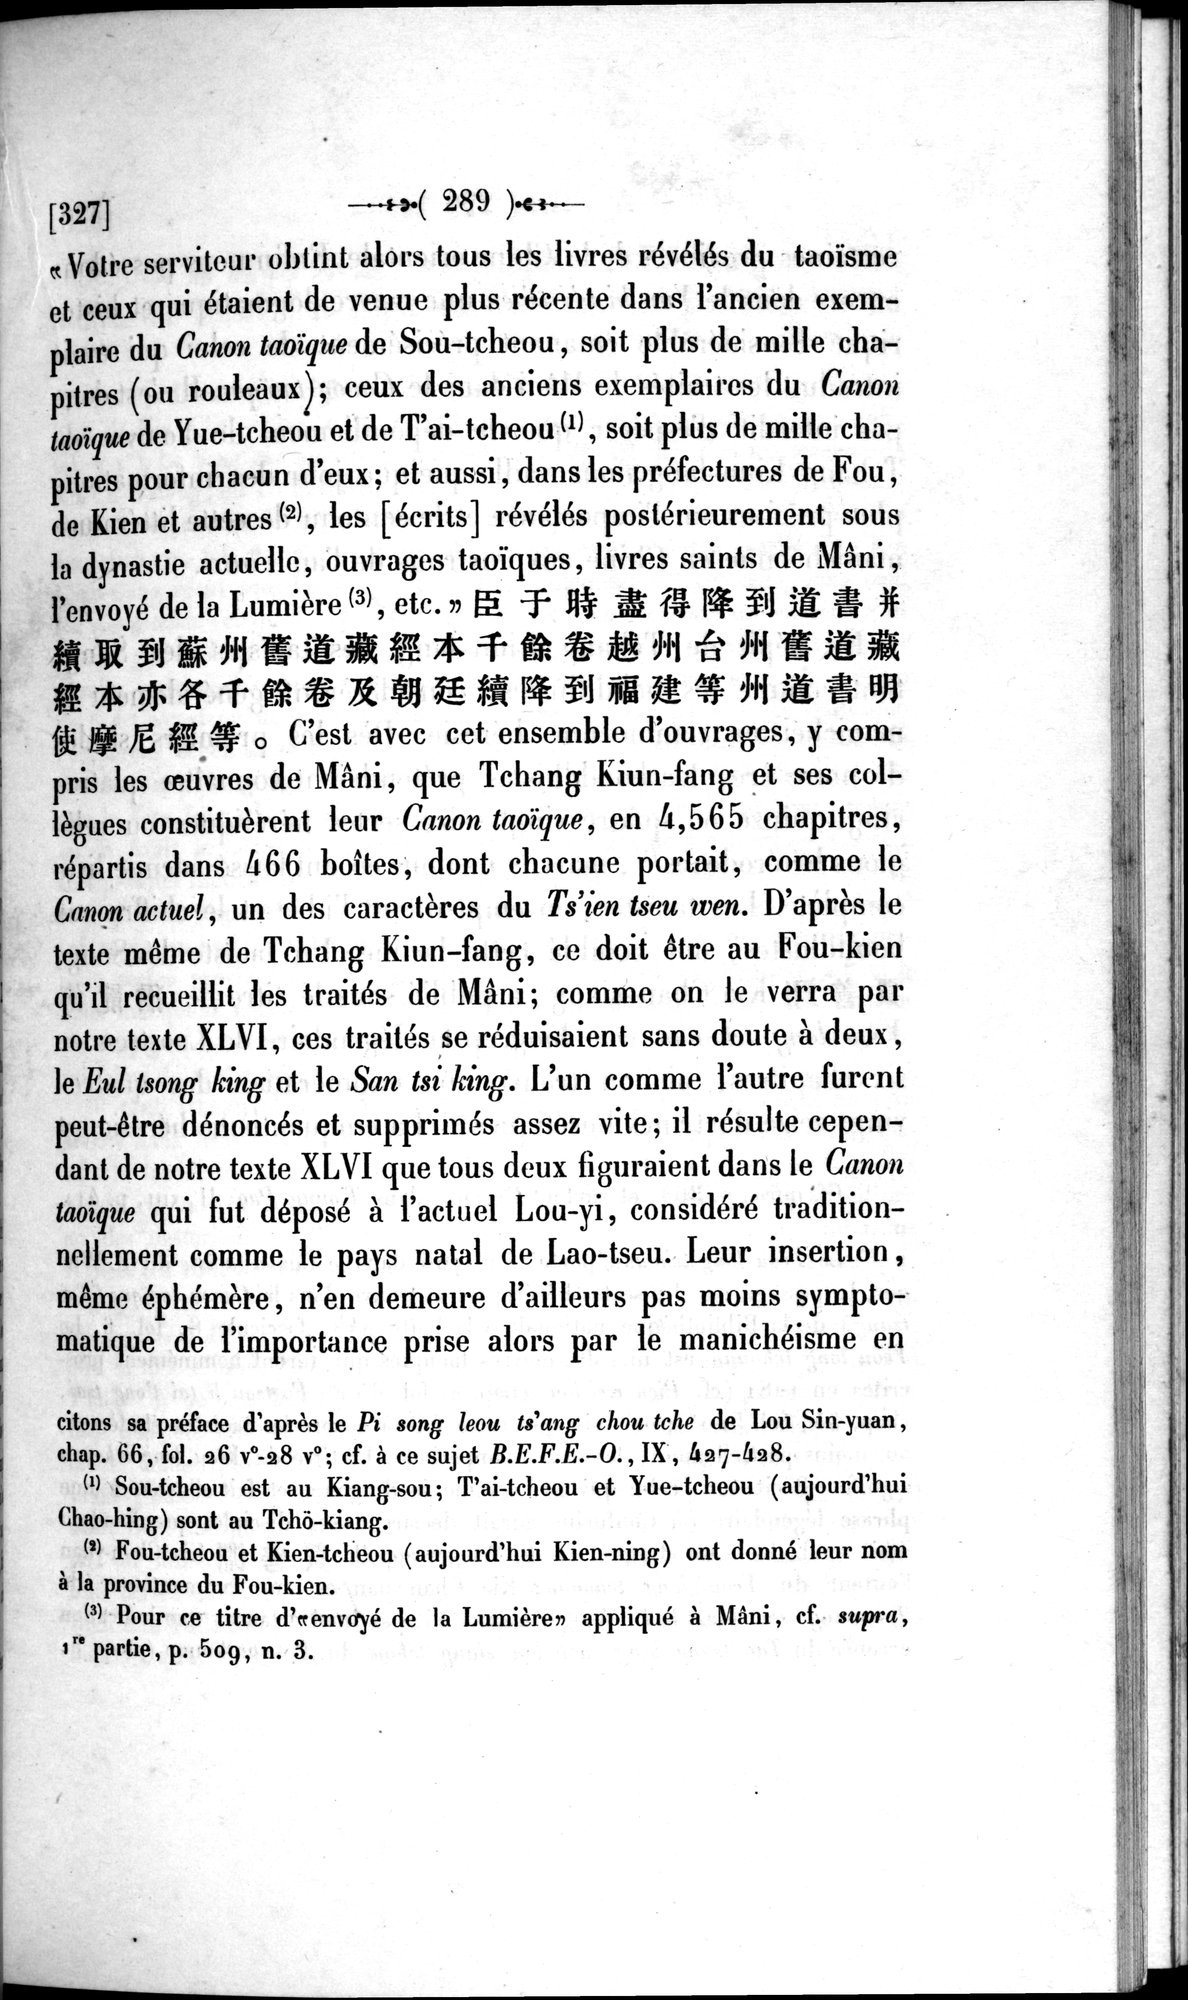 Un traité manichéen retrouvé en Chine : vol.1 / Page 299 (Grayscale High Resolution Image)